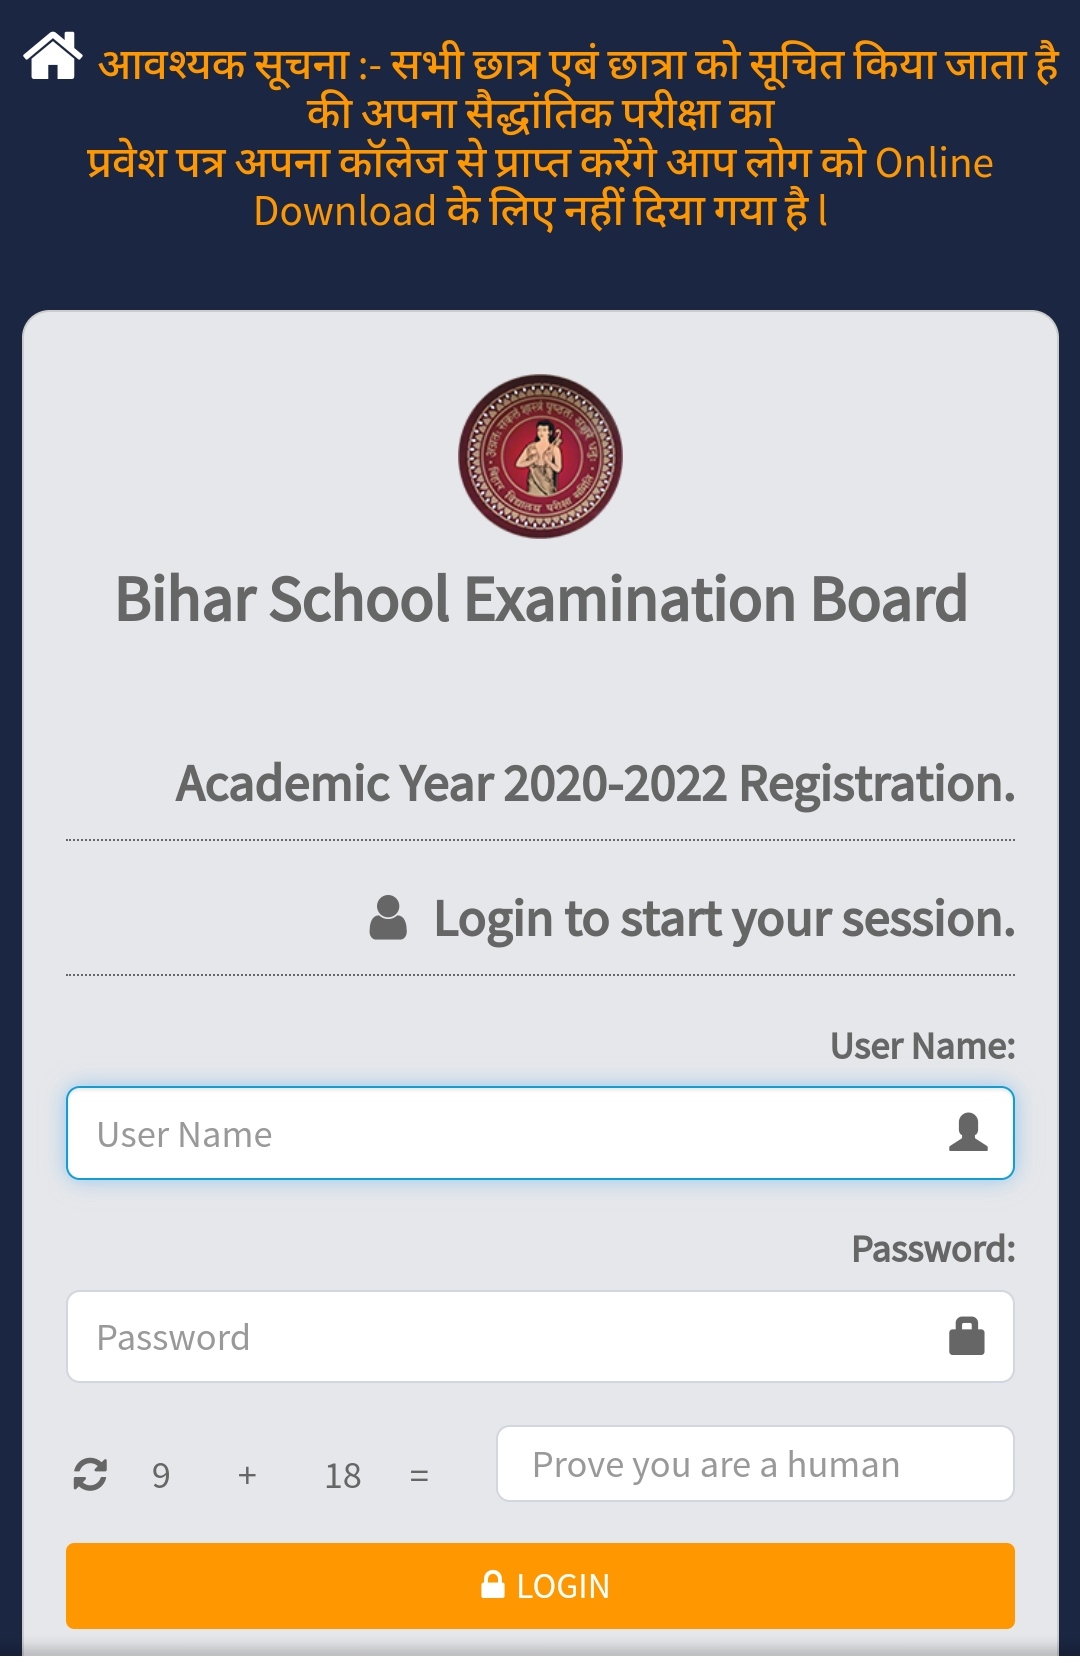 बड़ी खबर, अब कही भटकने की जरूरत नहीं   ऐसे प्राप्त करें  Bihar Board 12th का Admit Card,User ID और पासवर्ड की कोई जरूरत नहीं  जल्दी से देखें और सारे कंफ्यूजन को दूर करे…!! Bihar Board Intermediate Admit Card Download Link